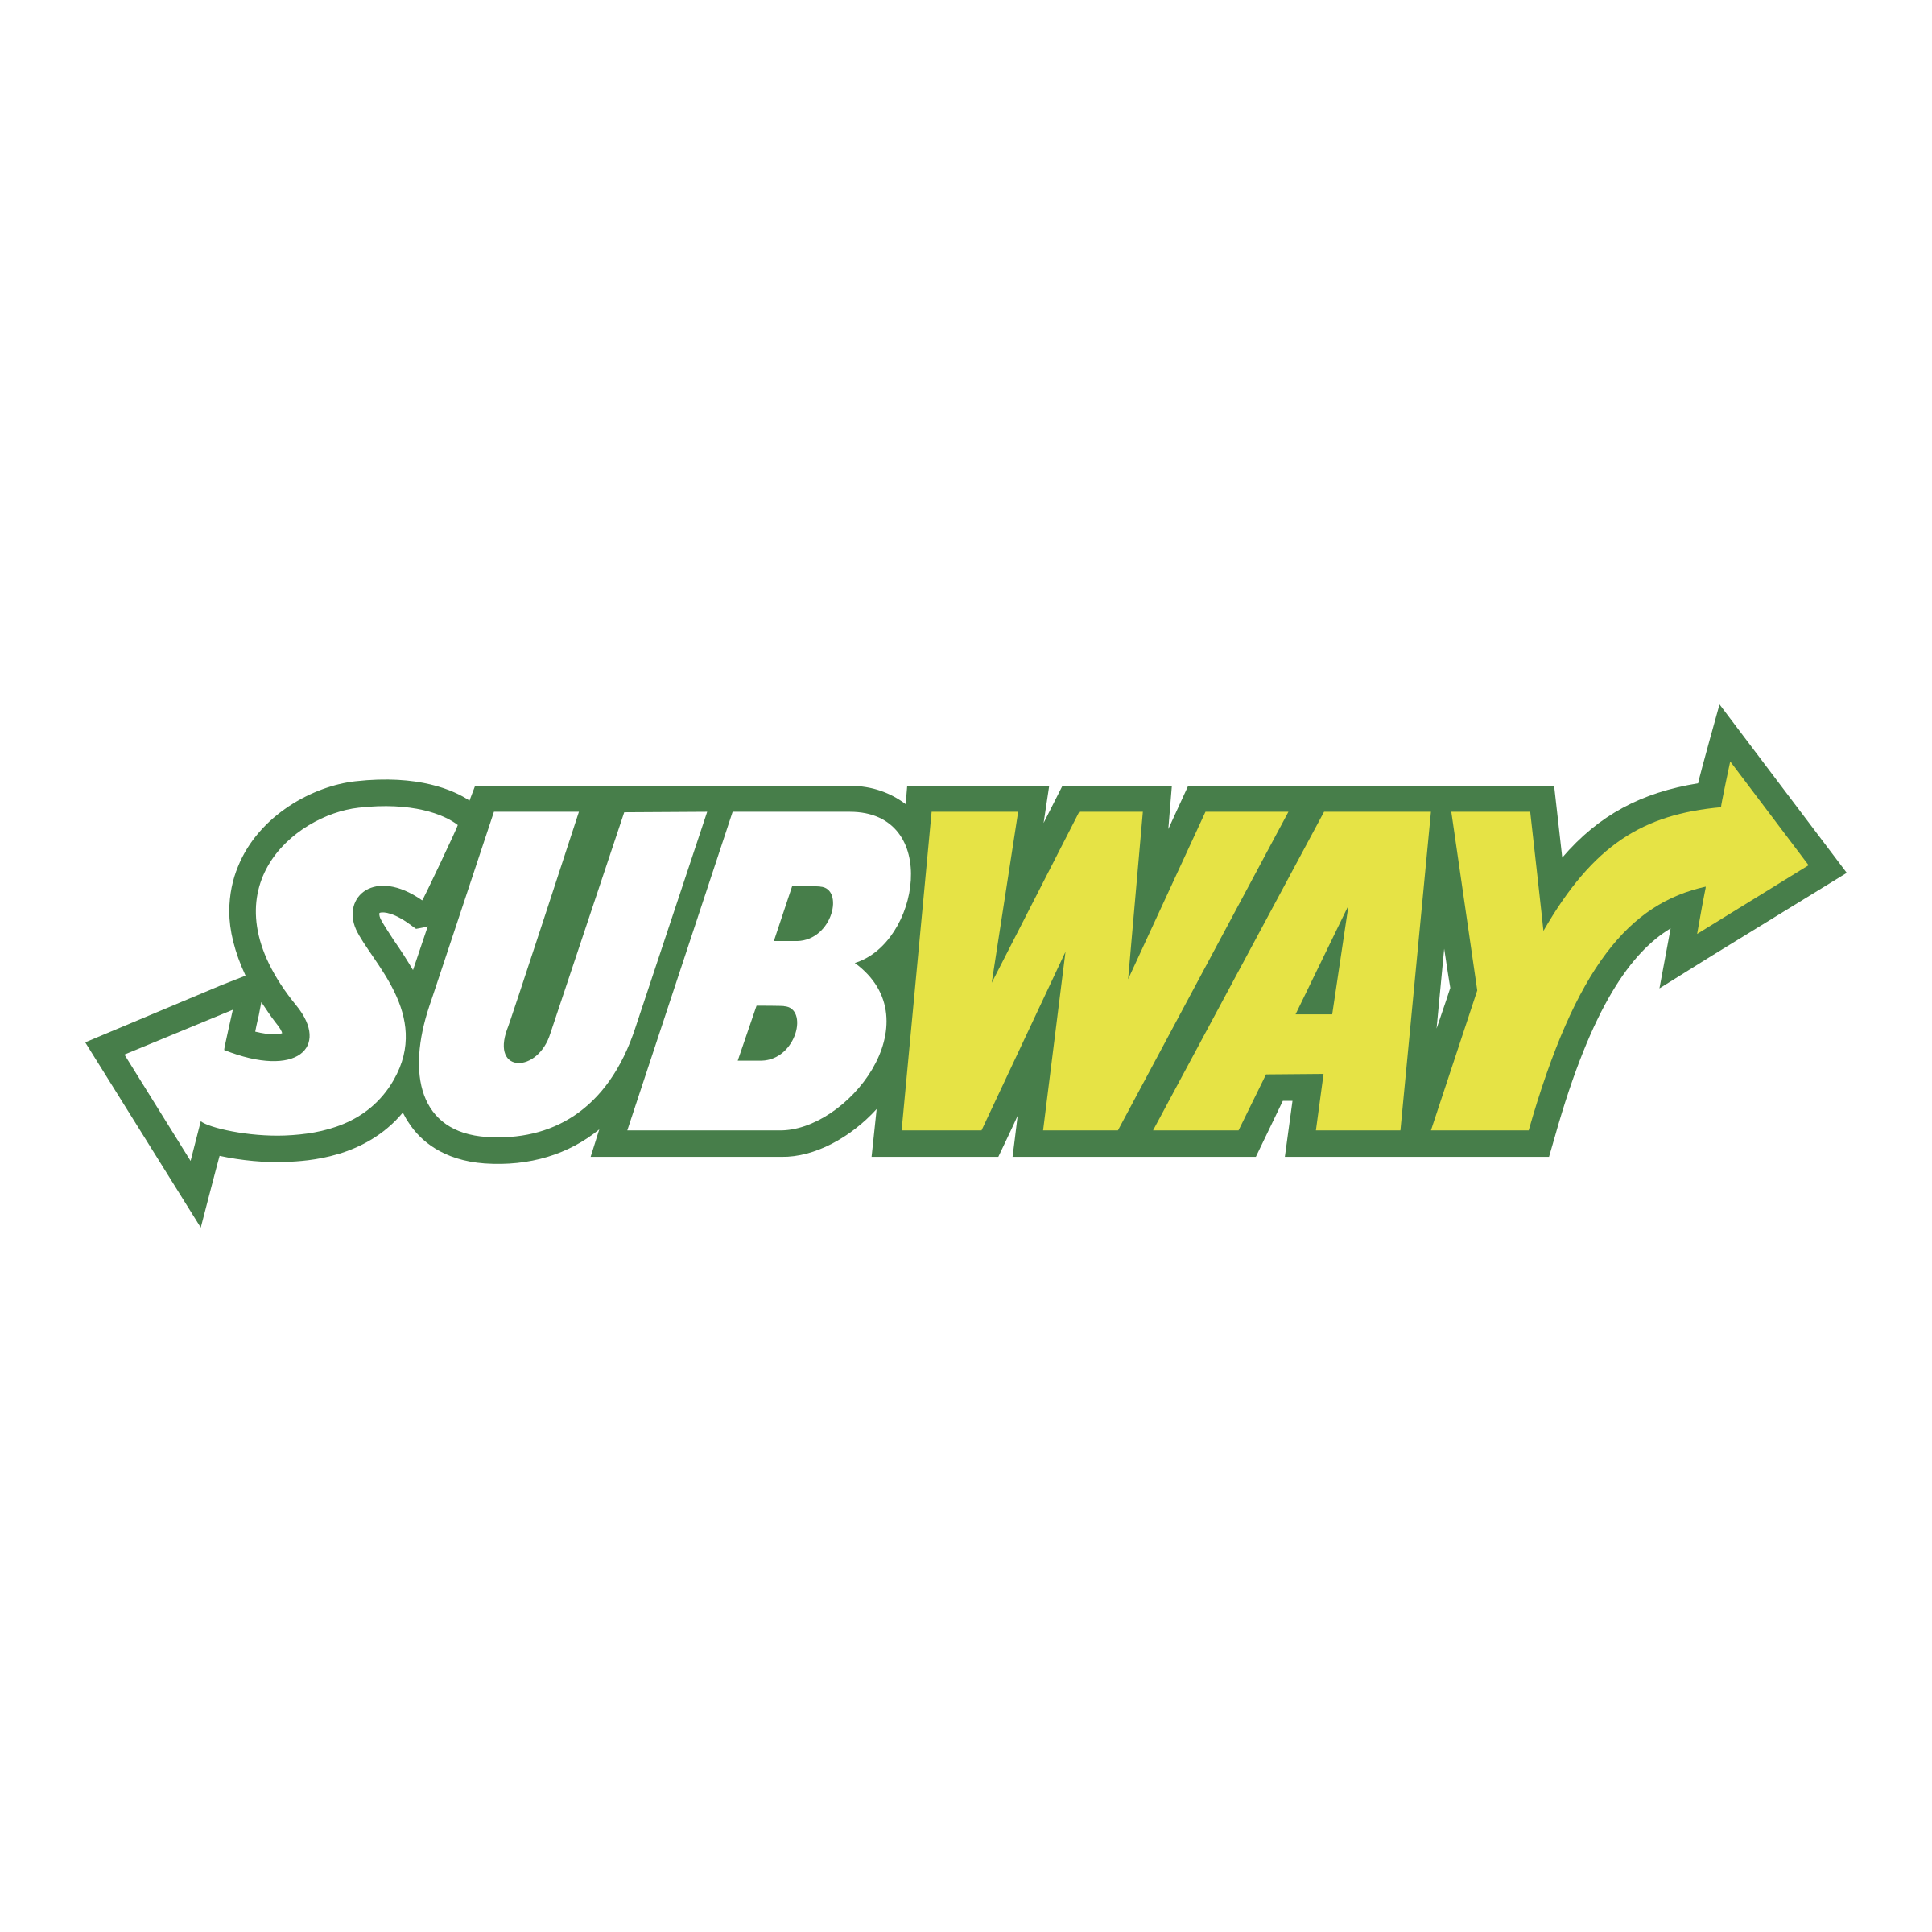 subway-11-logo-png-transparent.png